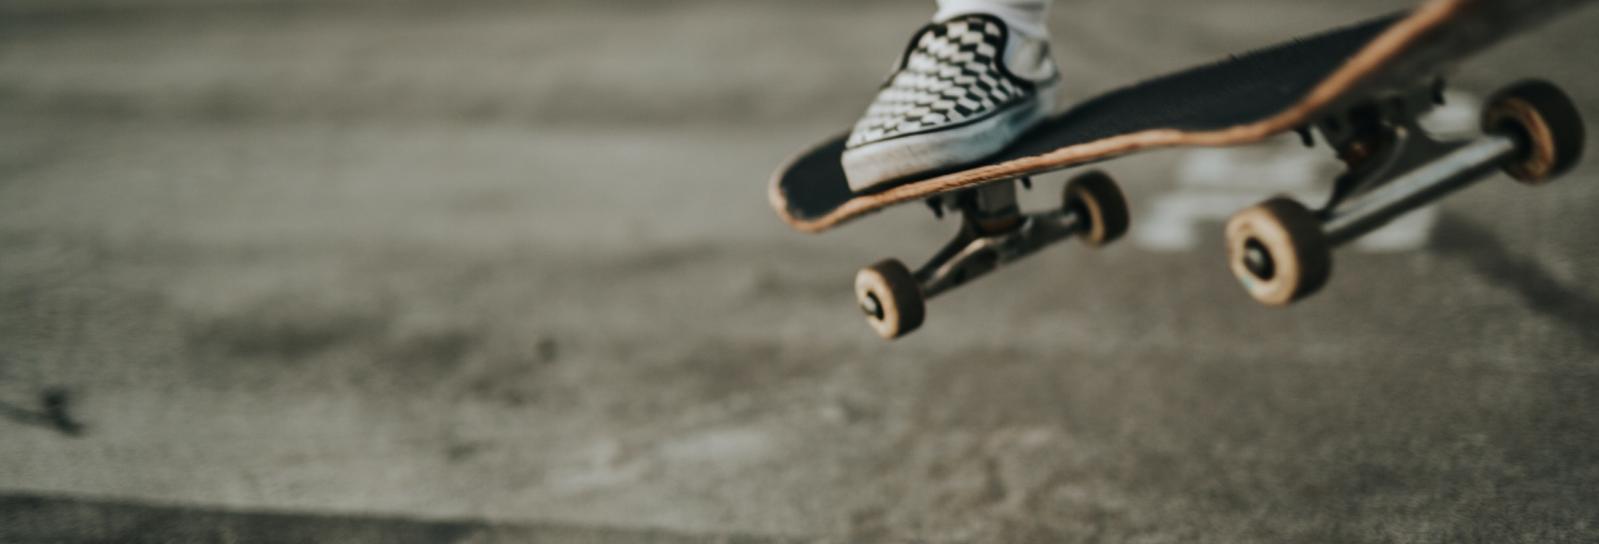 En nærbillede af et skateboard med en fod på, der er ved at lande på jorden